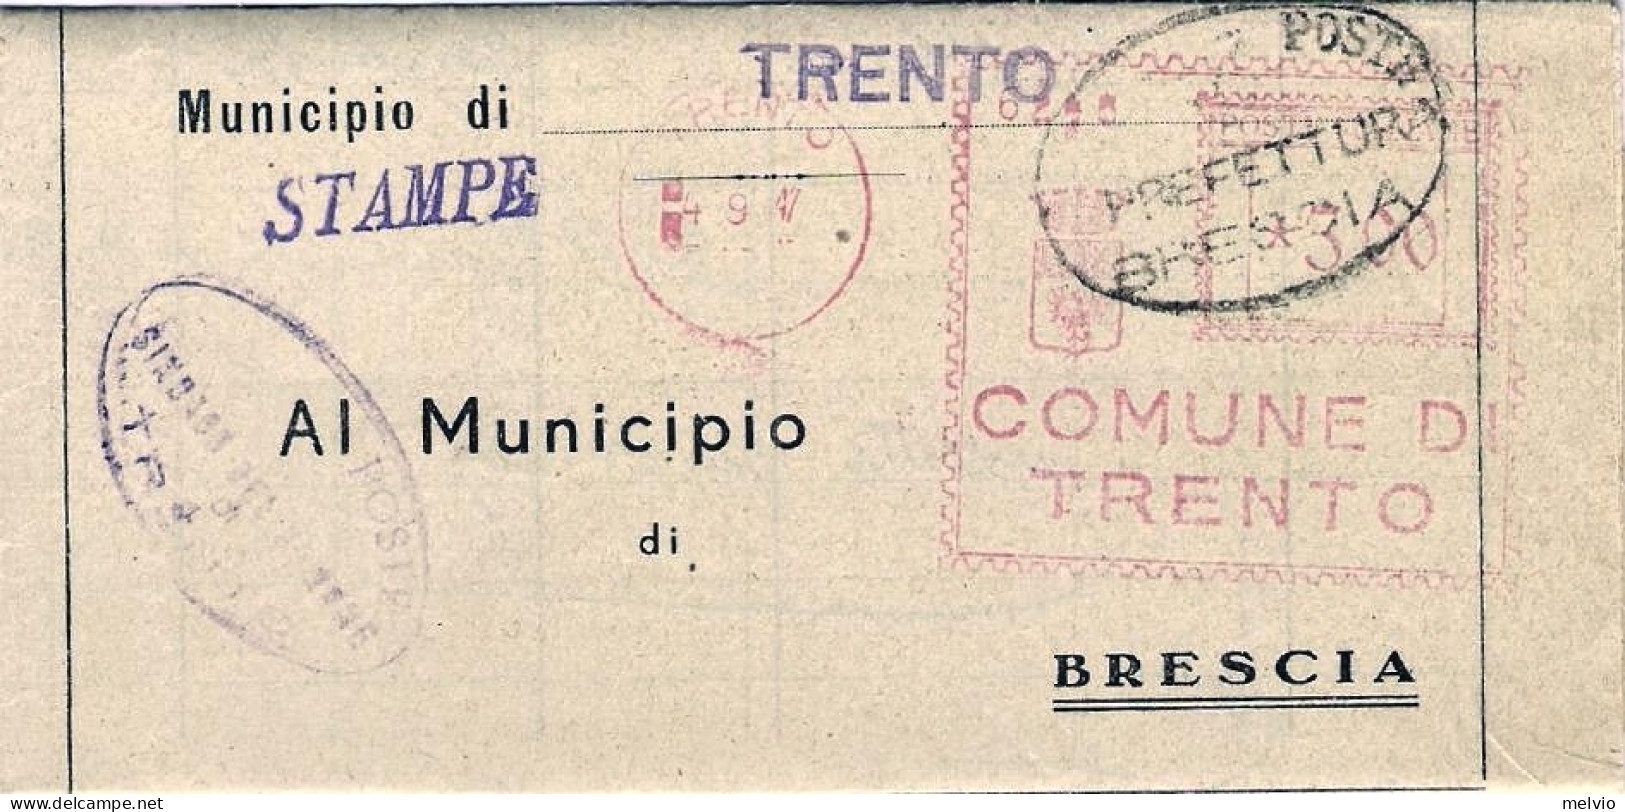 1946-piego comunale affrancatura meccanica rossa del comune di Trento L.3